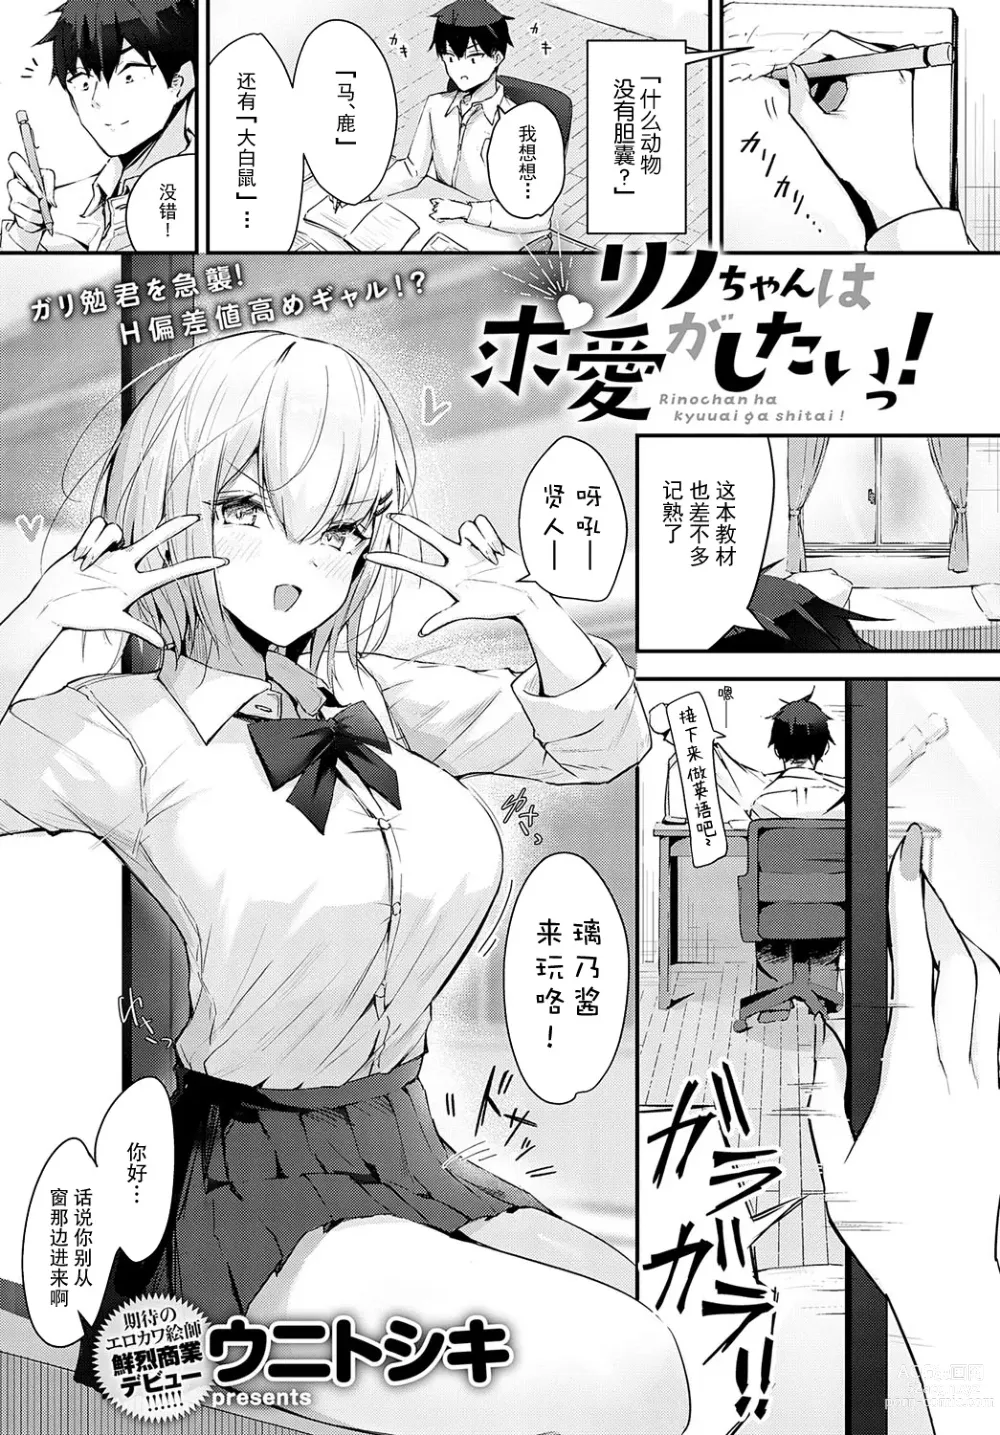 Page 1 of manga Rino-chan wa Kyuai ga Shitaii!